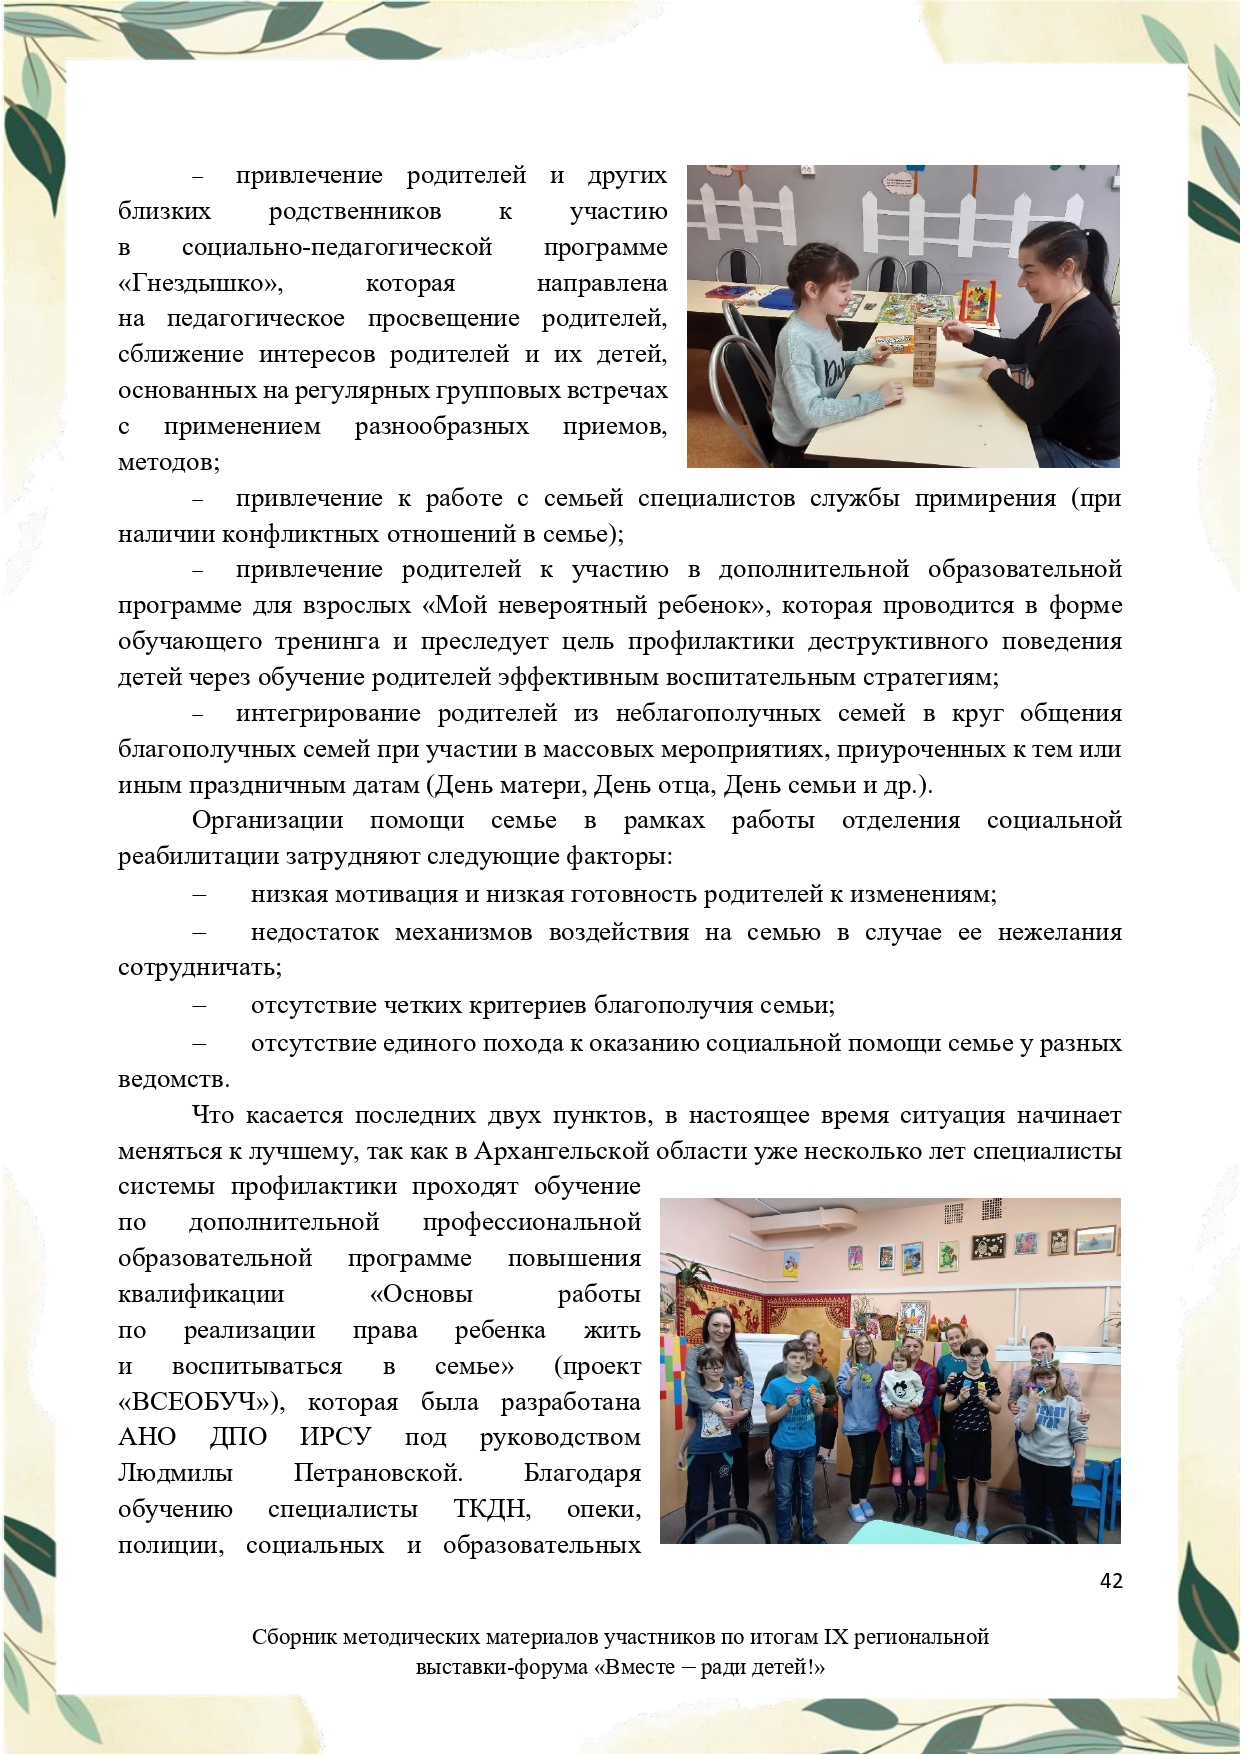 Sbornik_metodicheskikh_materialov_uchastnikov_IX_regionalnoy_vystavki-foruma_Vmeste__radi_detey_33__2023_page-0042